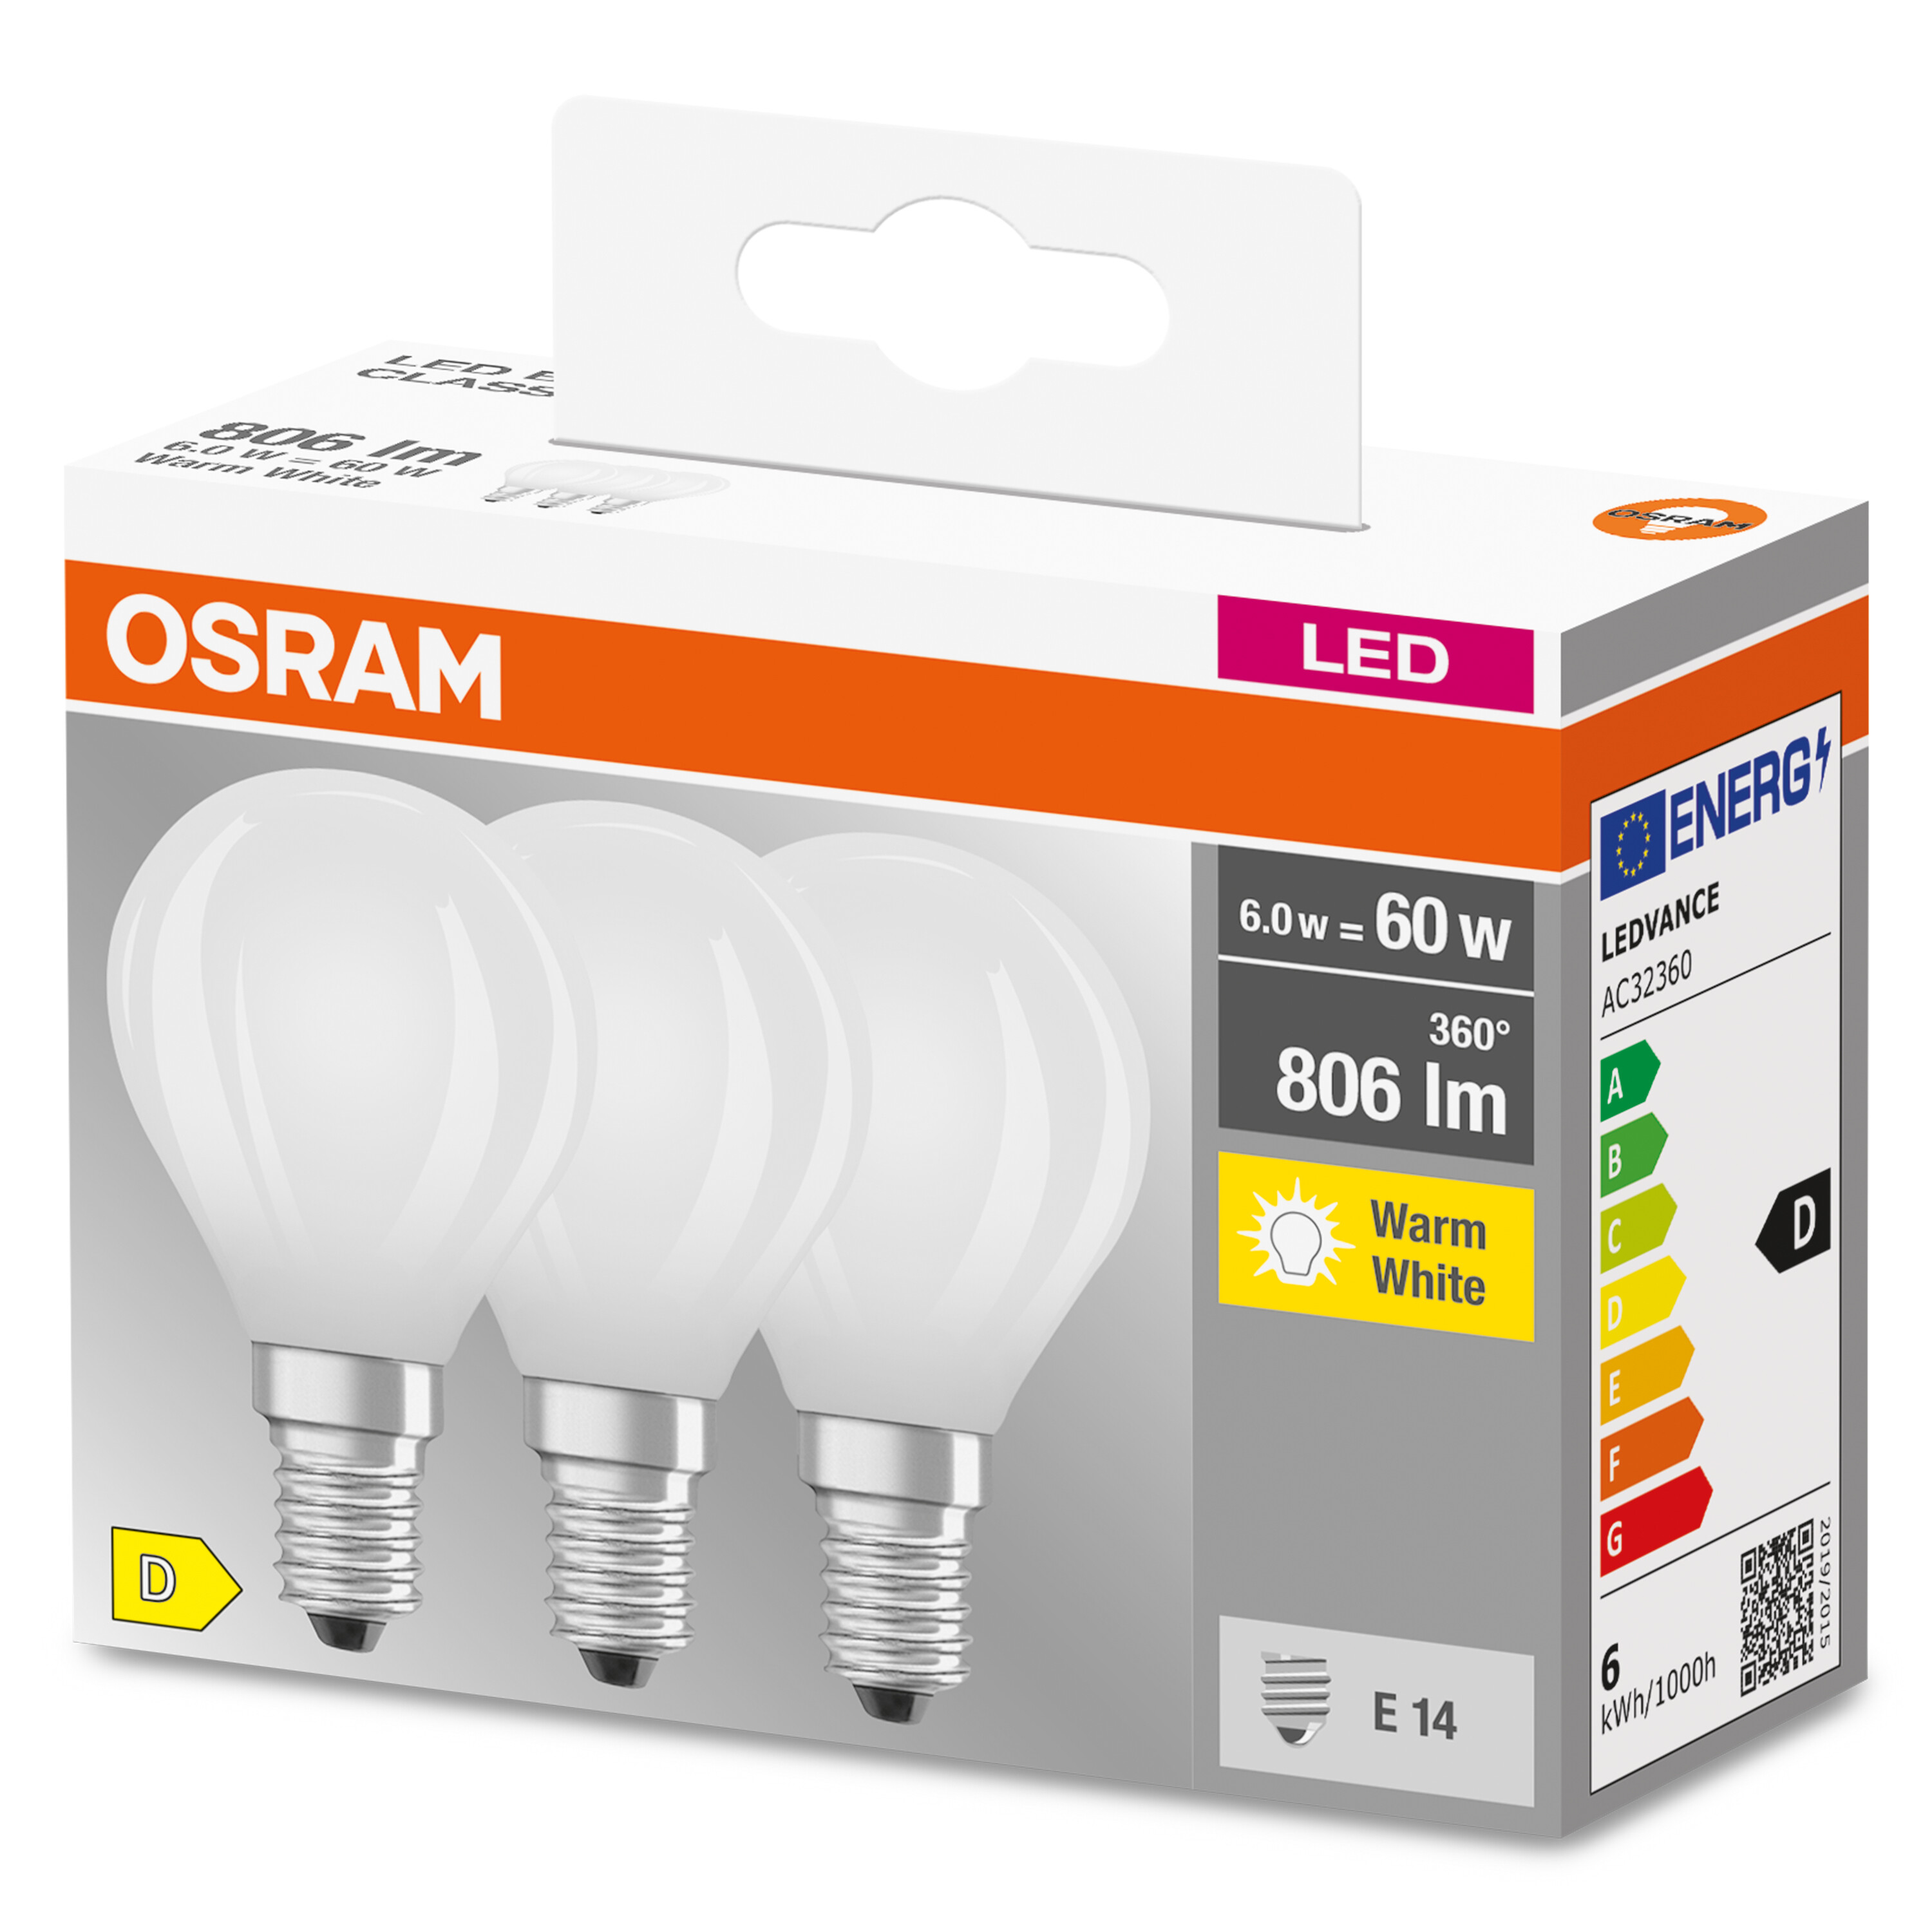 BASE LED CLASSIC Lumen P Warmweiß Lampe 806 OSRAM  LED